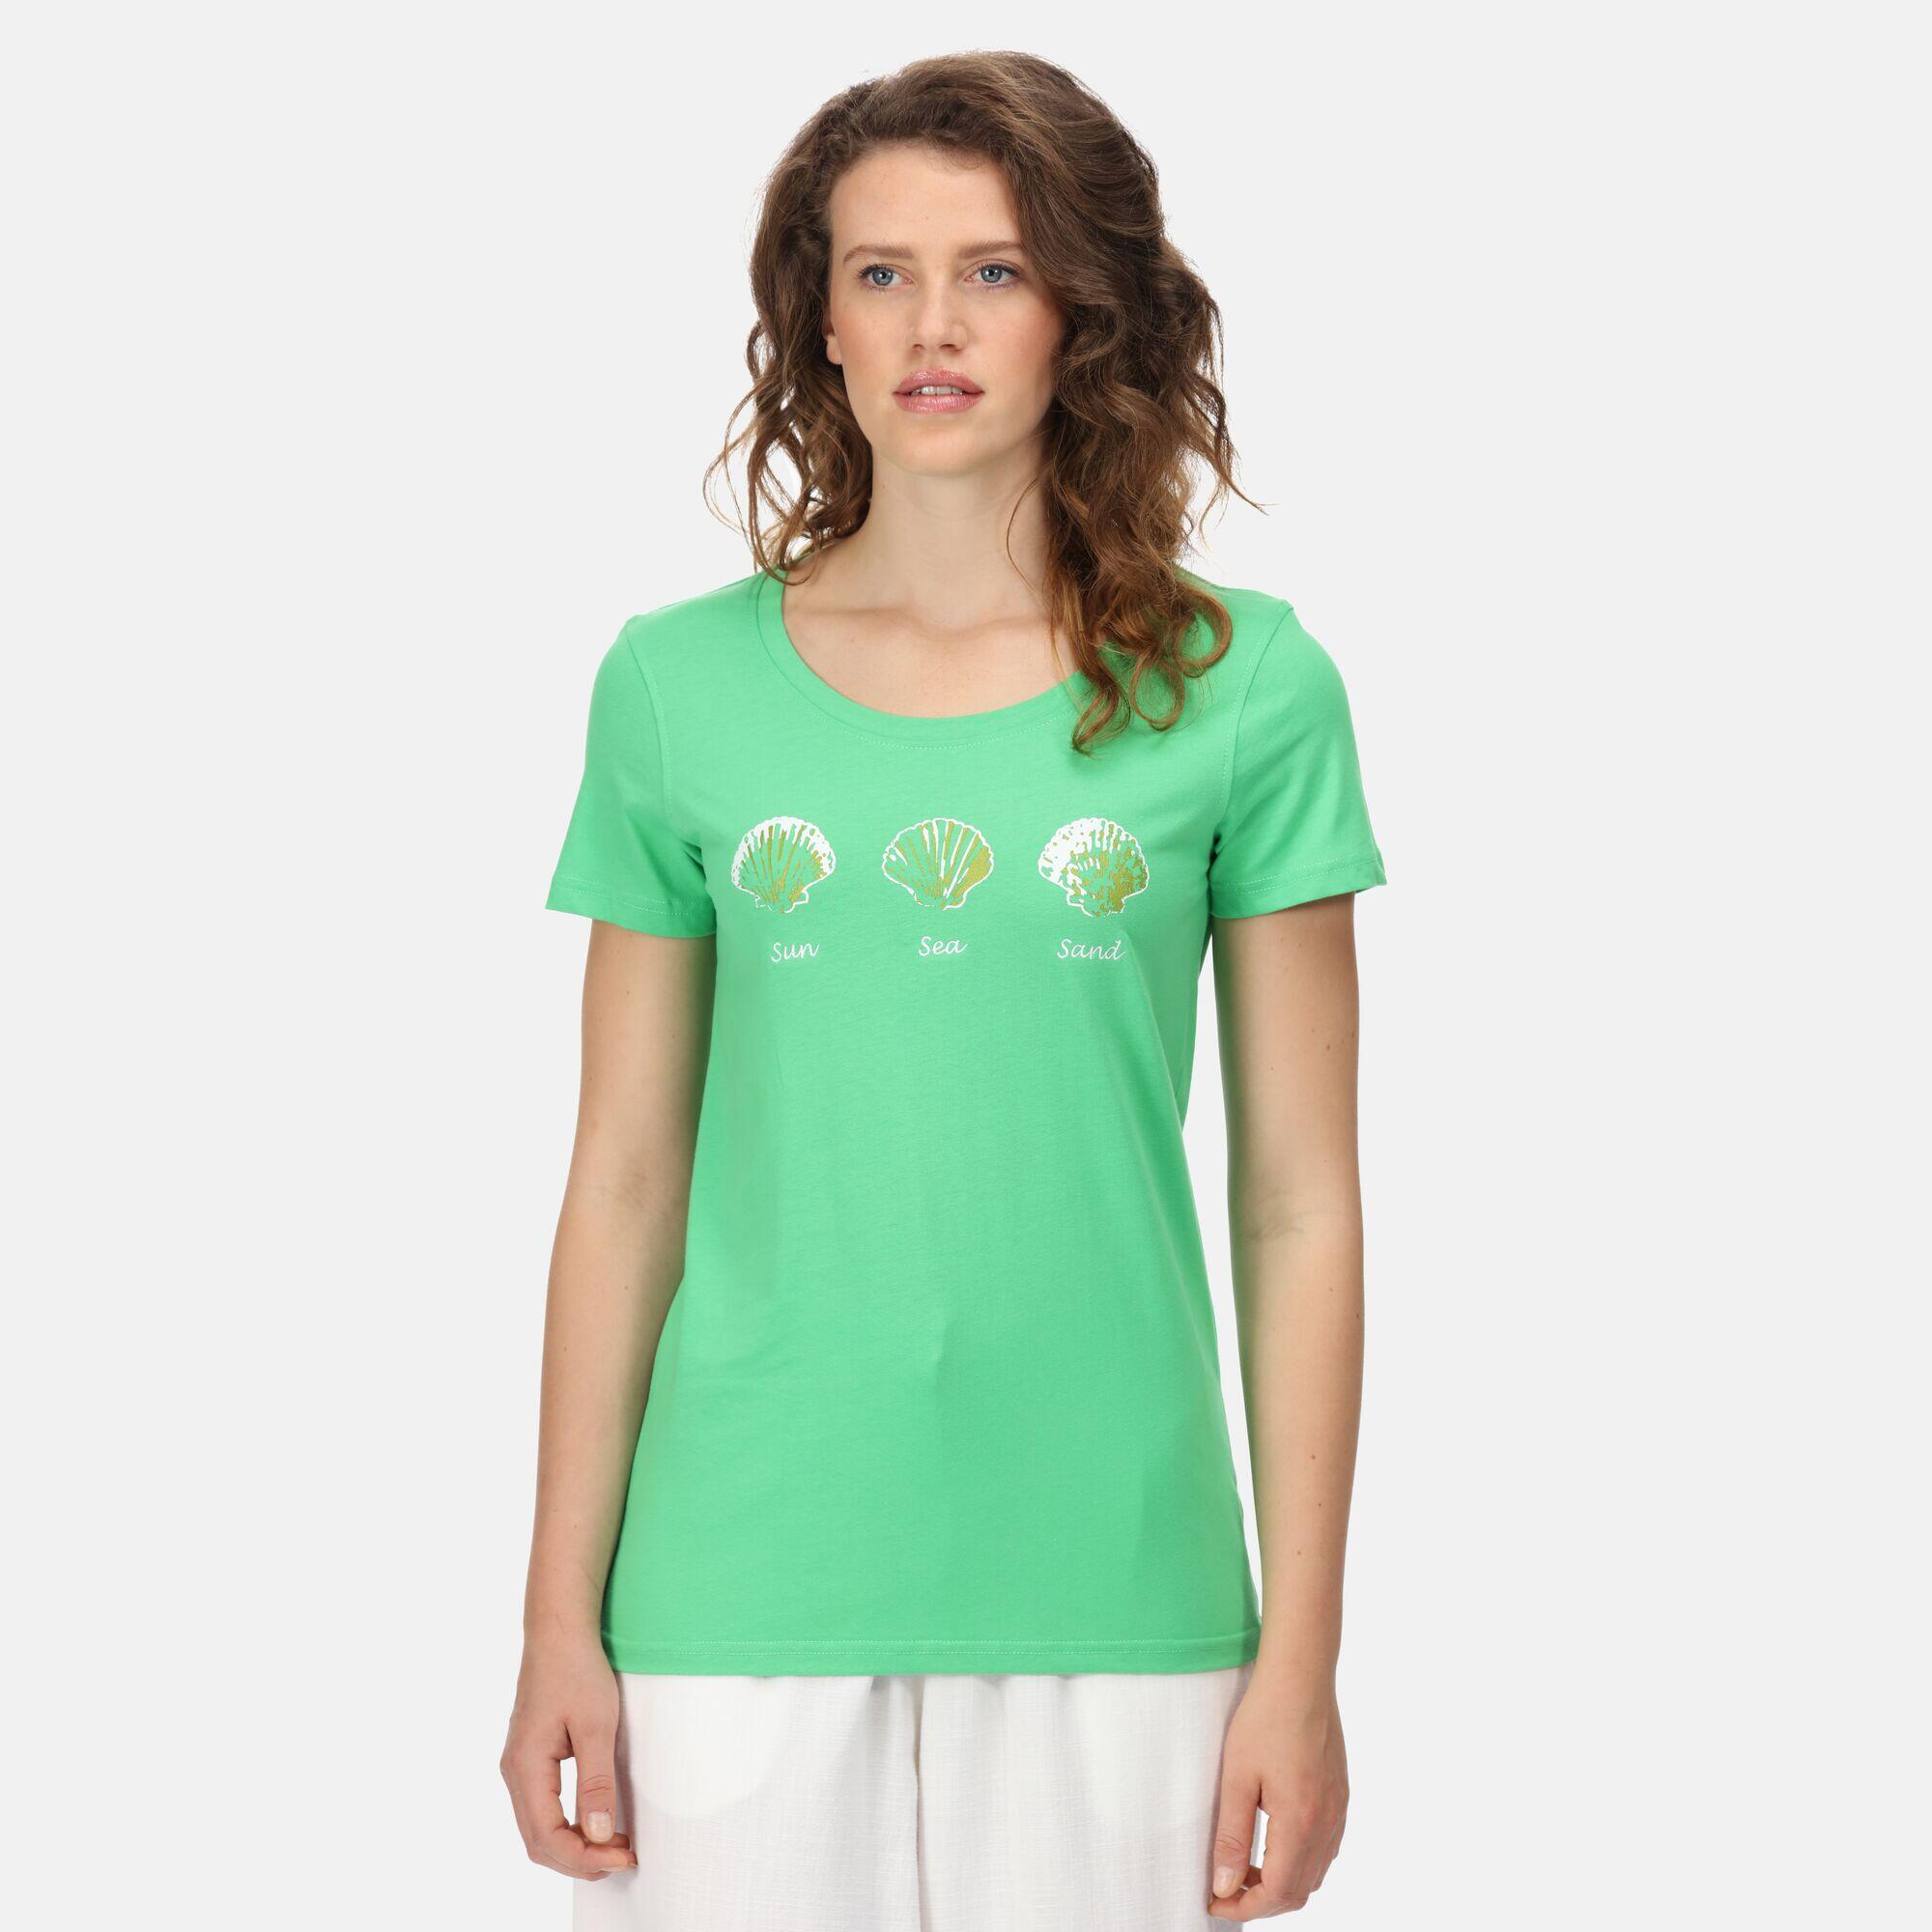 REGATTA Filandra VI Women's Walking Short Sleeve T-Shirt - Vibrant Green